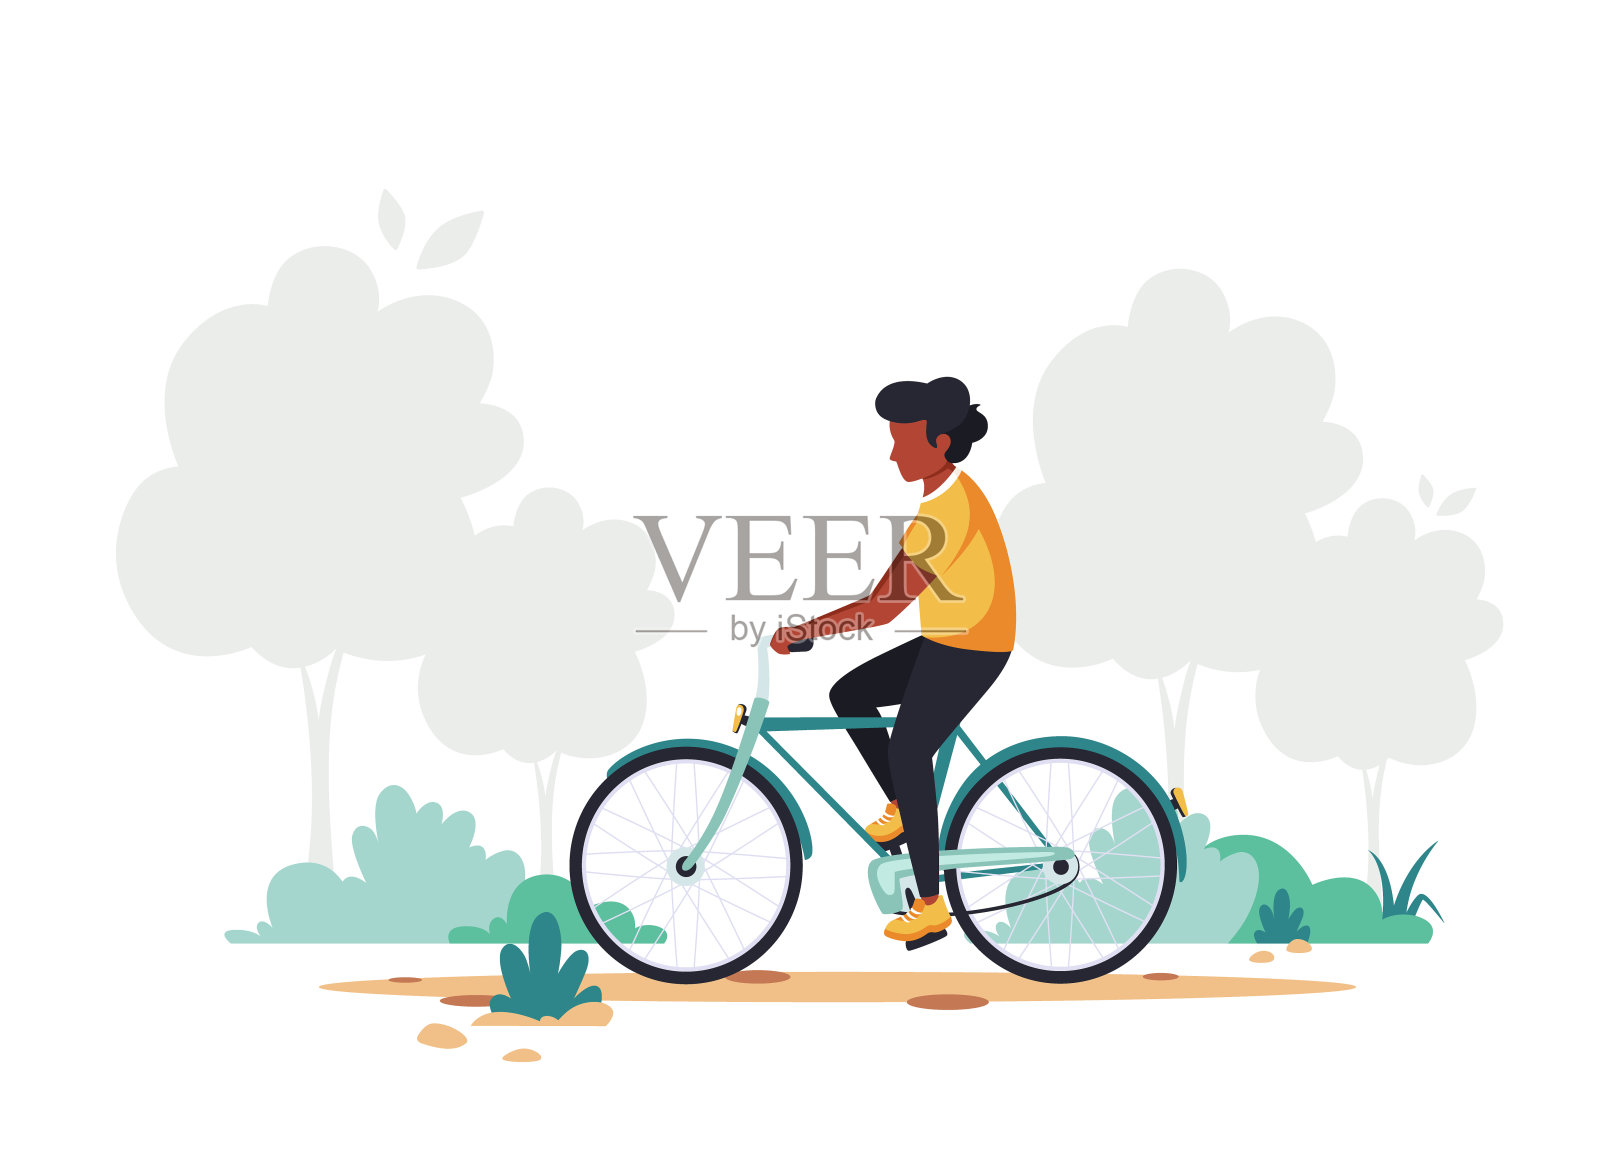 骑自行车的黑人。健康生活方式、运动、户外活动理念。矢量插图在平面风格。插画图片素材